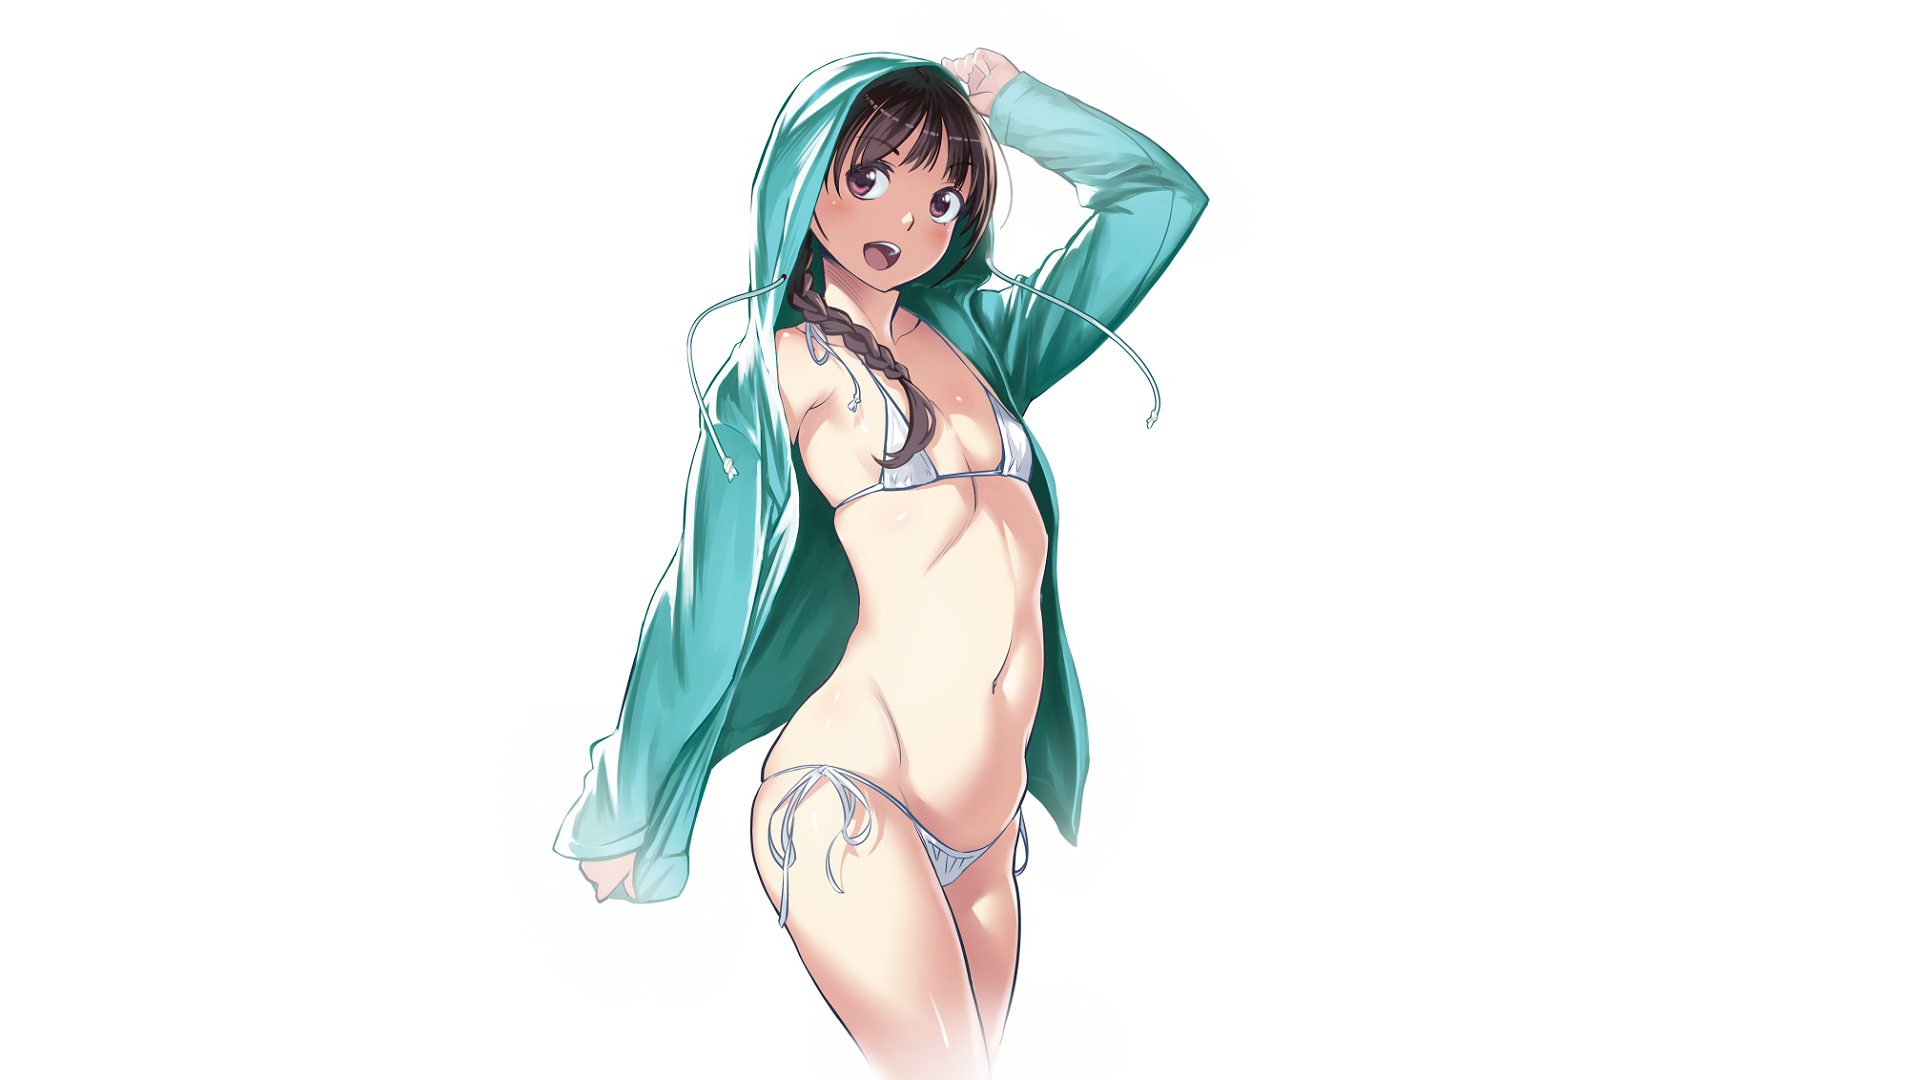 Anime 1920x1080 bikini ecchi small boobs skinny open clothes anime girls simple background white background